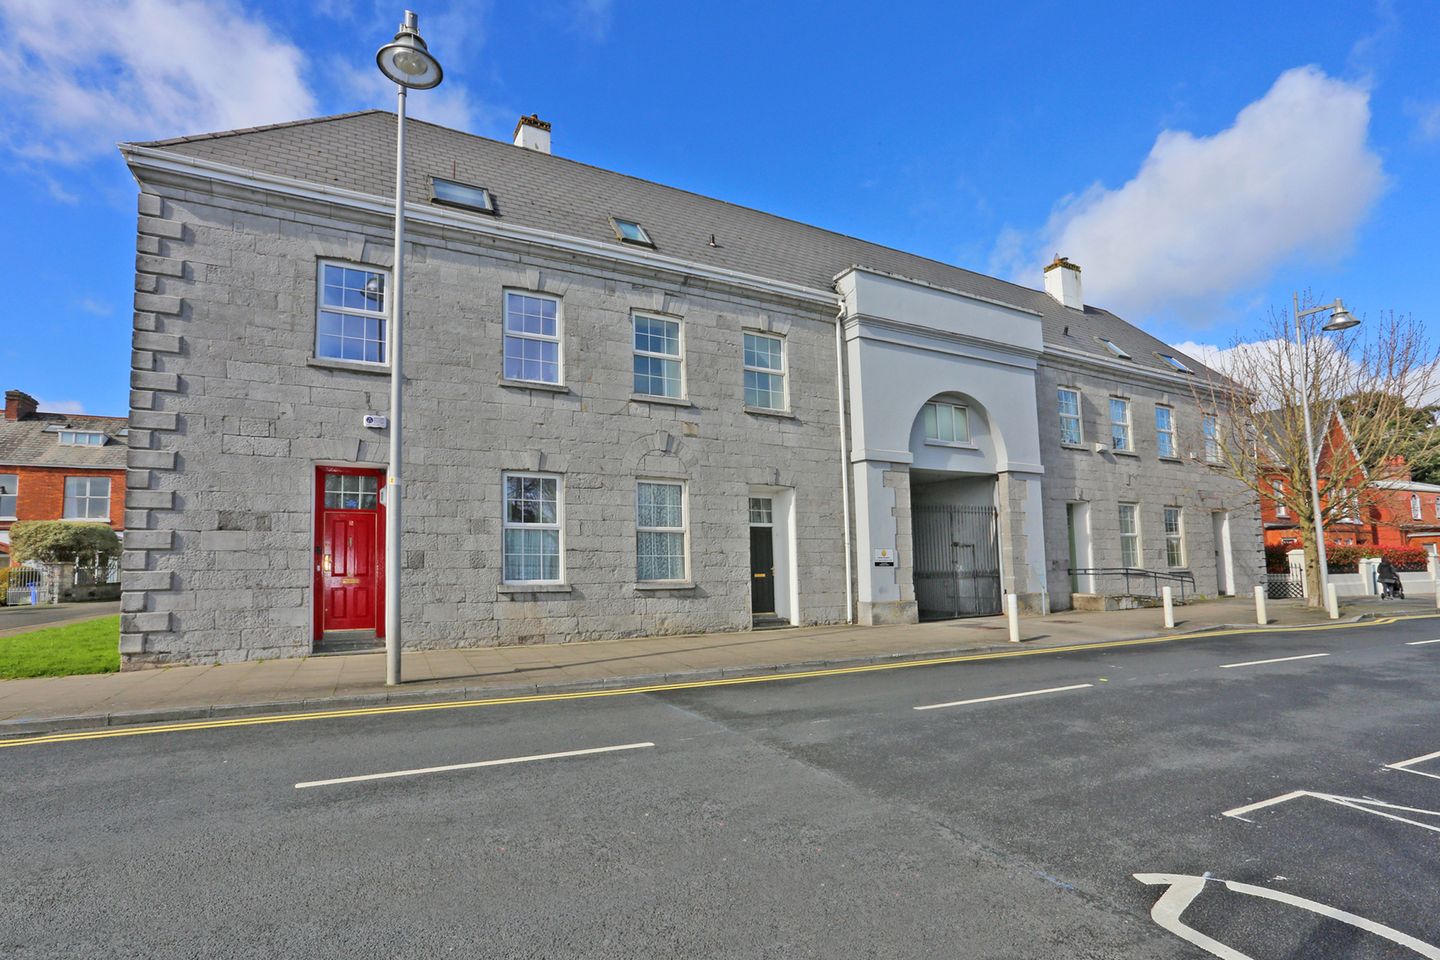 17 Castle Court, Clancy Strand, Limerick, Ennis Road, Co. Limerick